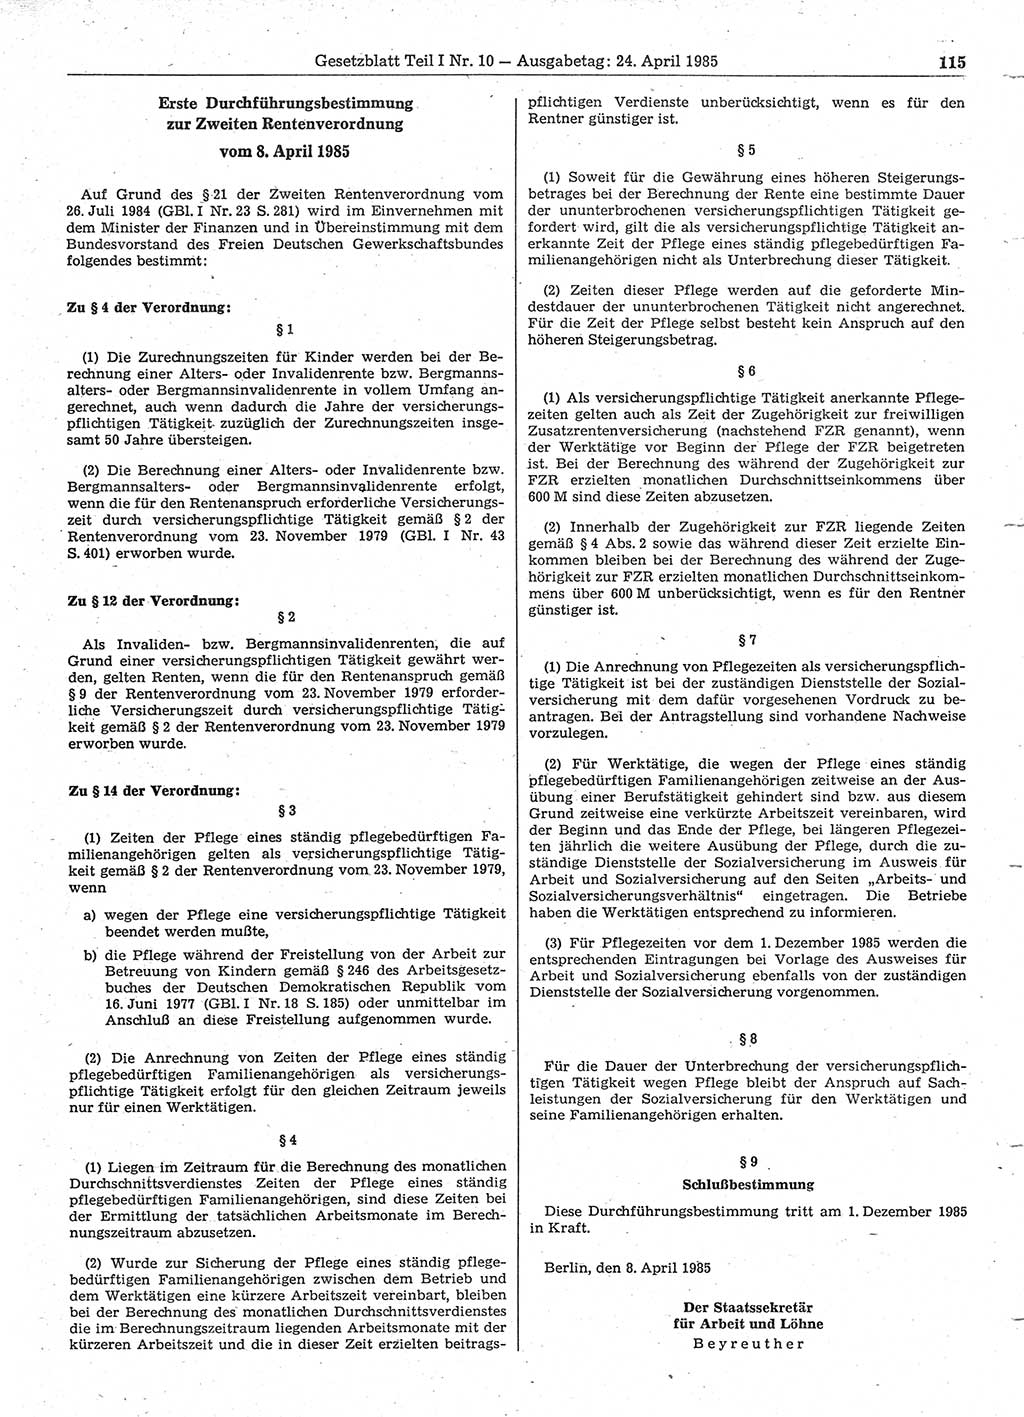 Gesetzblatt (GBl.) der Deutschen Demokratischen Republik (DDR) Teil Ⅰ 1985, Seite 115 (GBl. DDR Ⅰ 1985, S. 115)